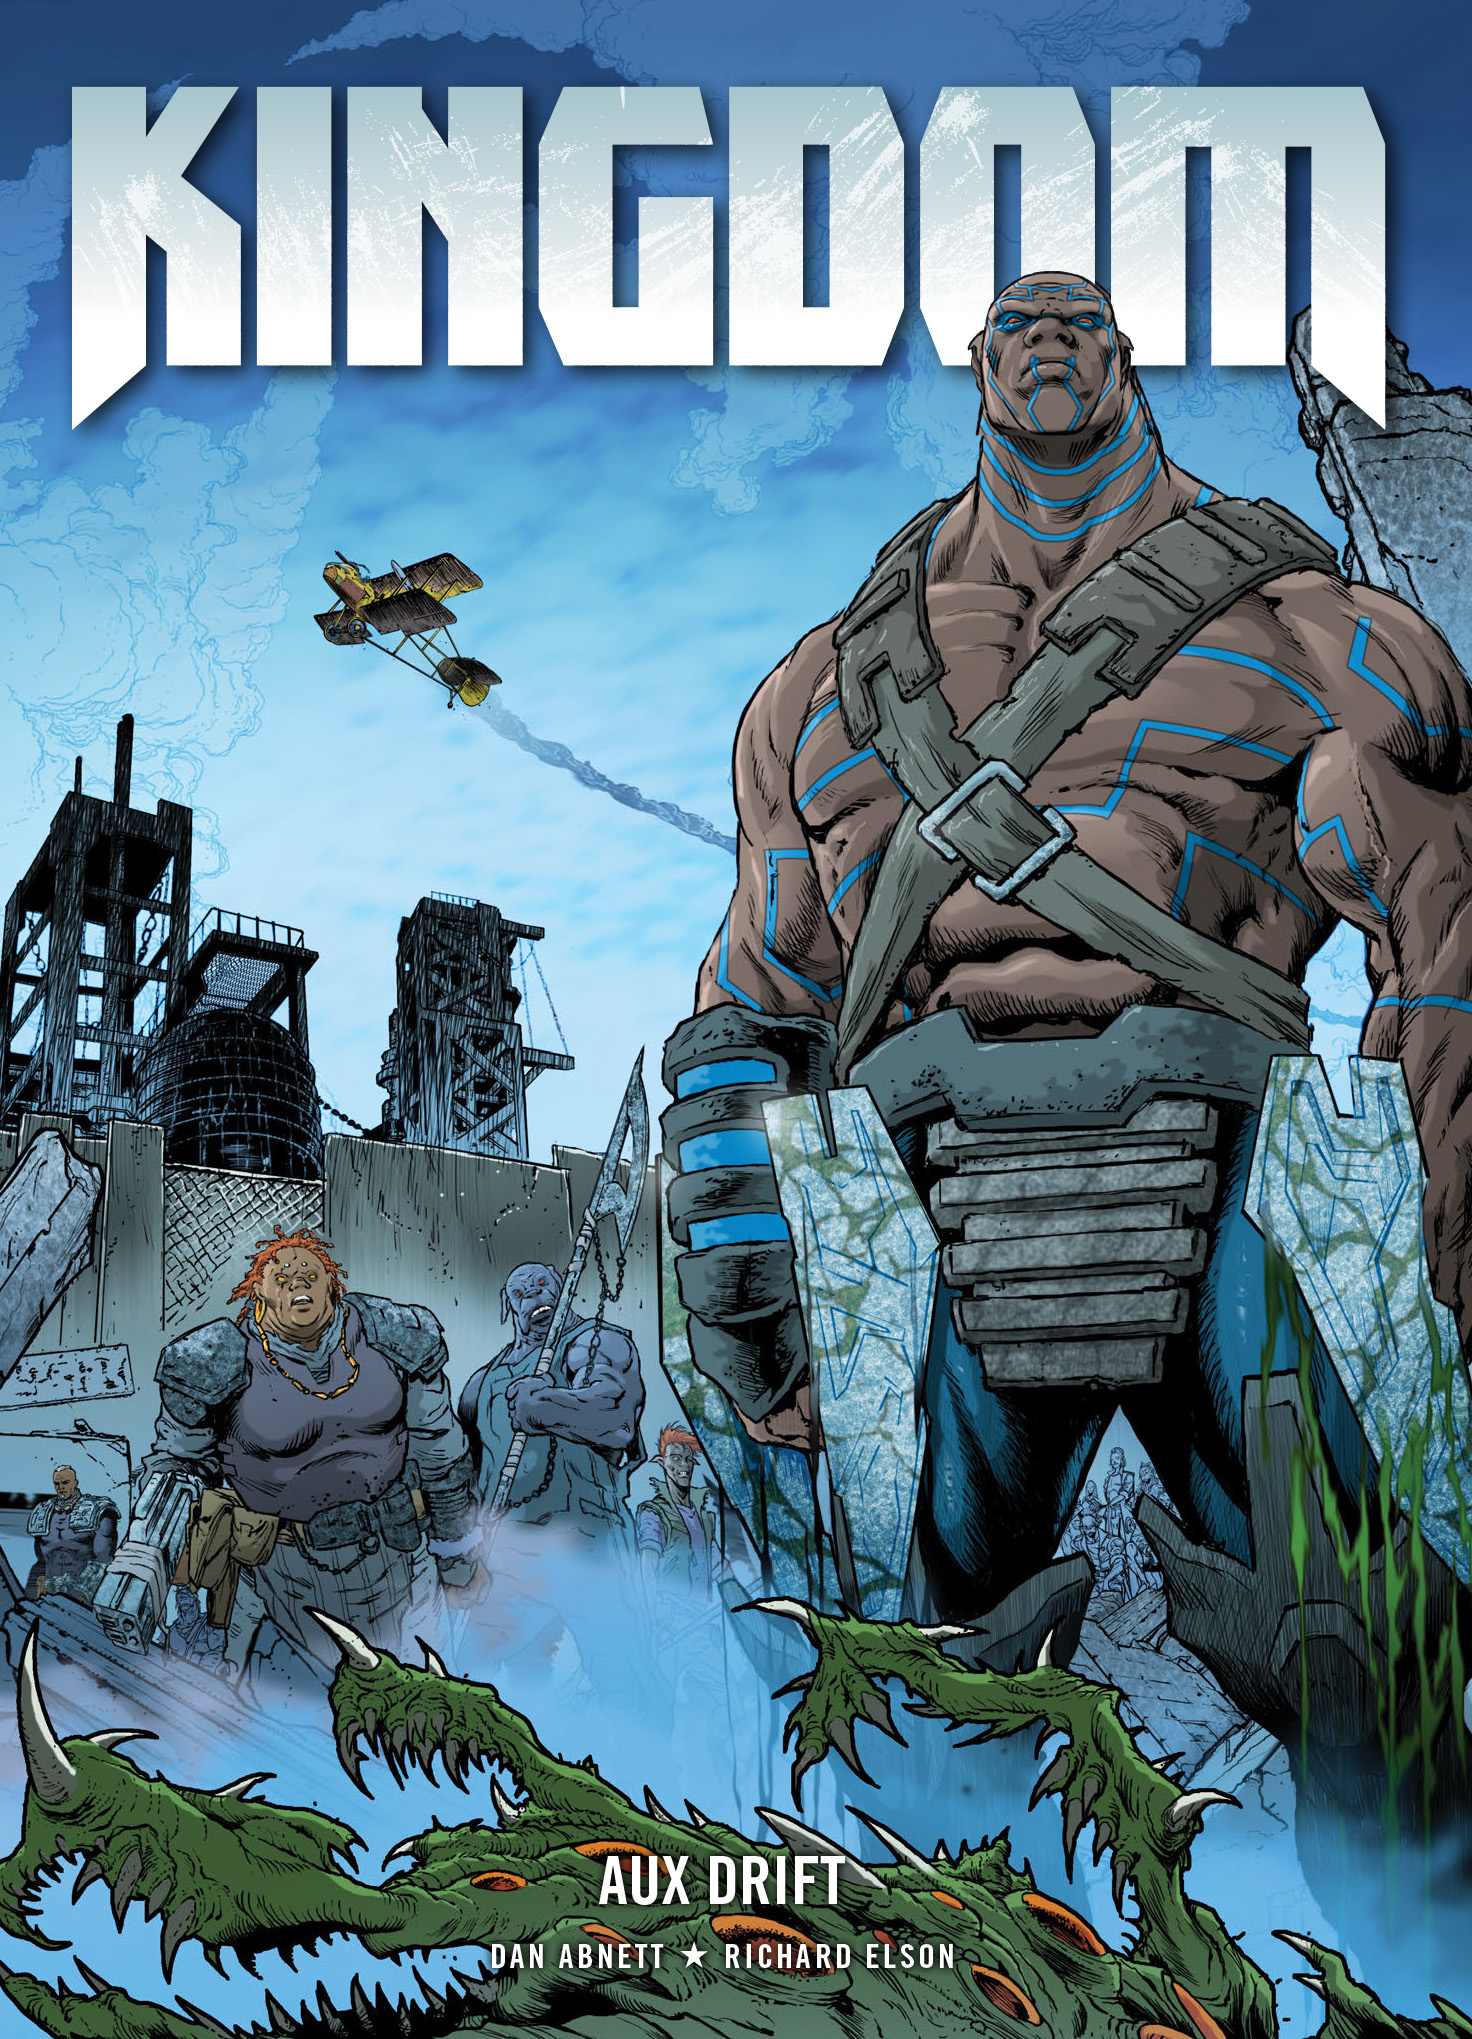 Read online Kingdom comic -  Issue # TPB 3 - 1